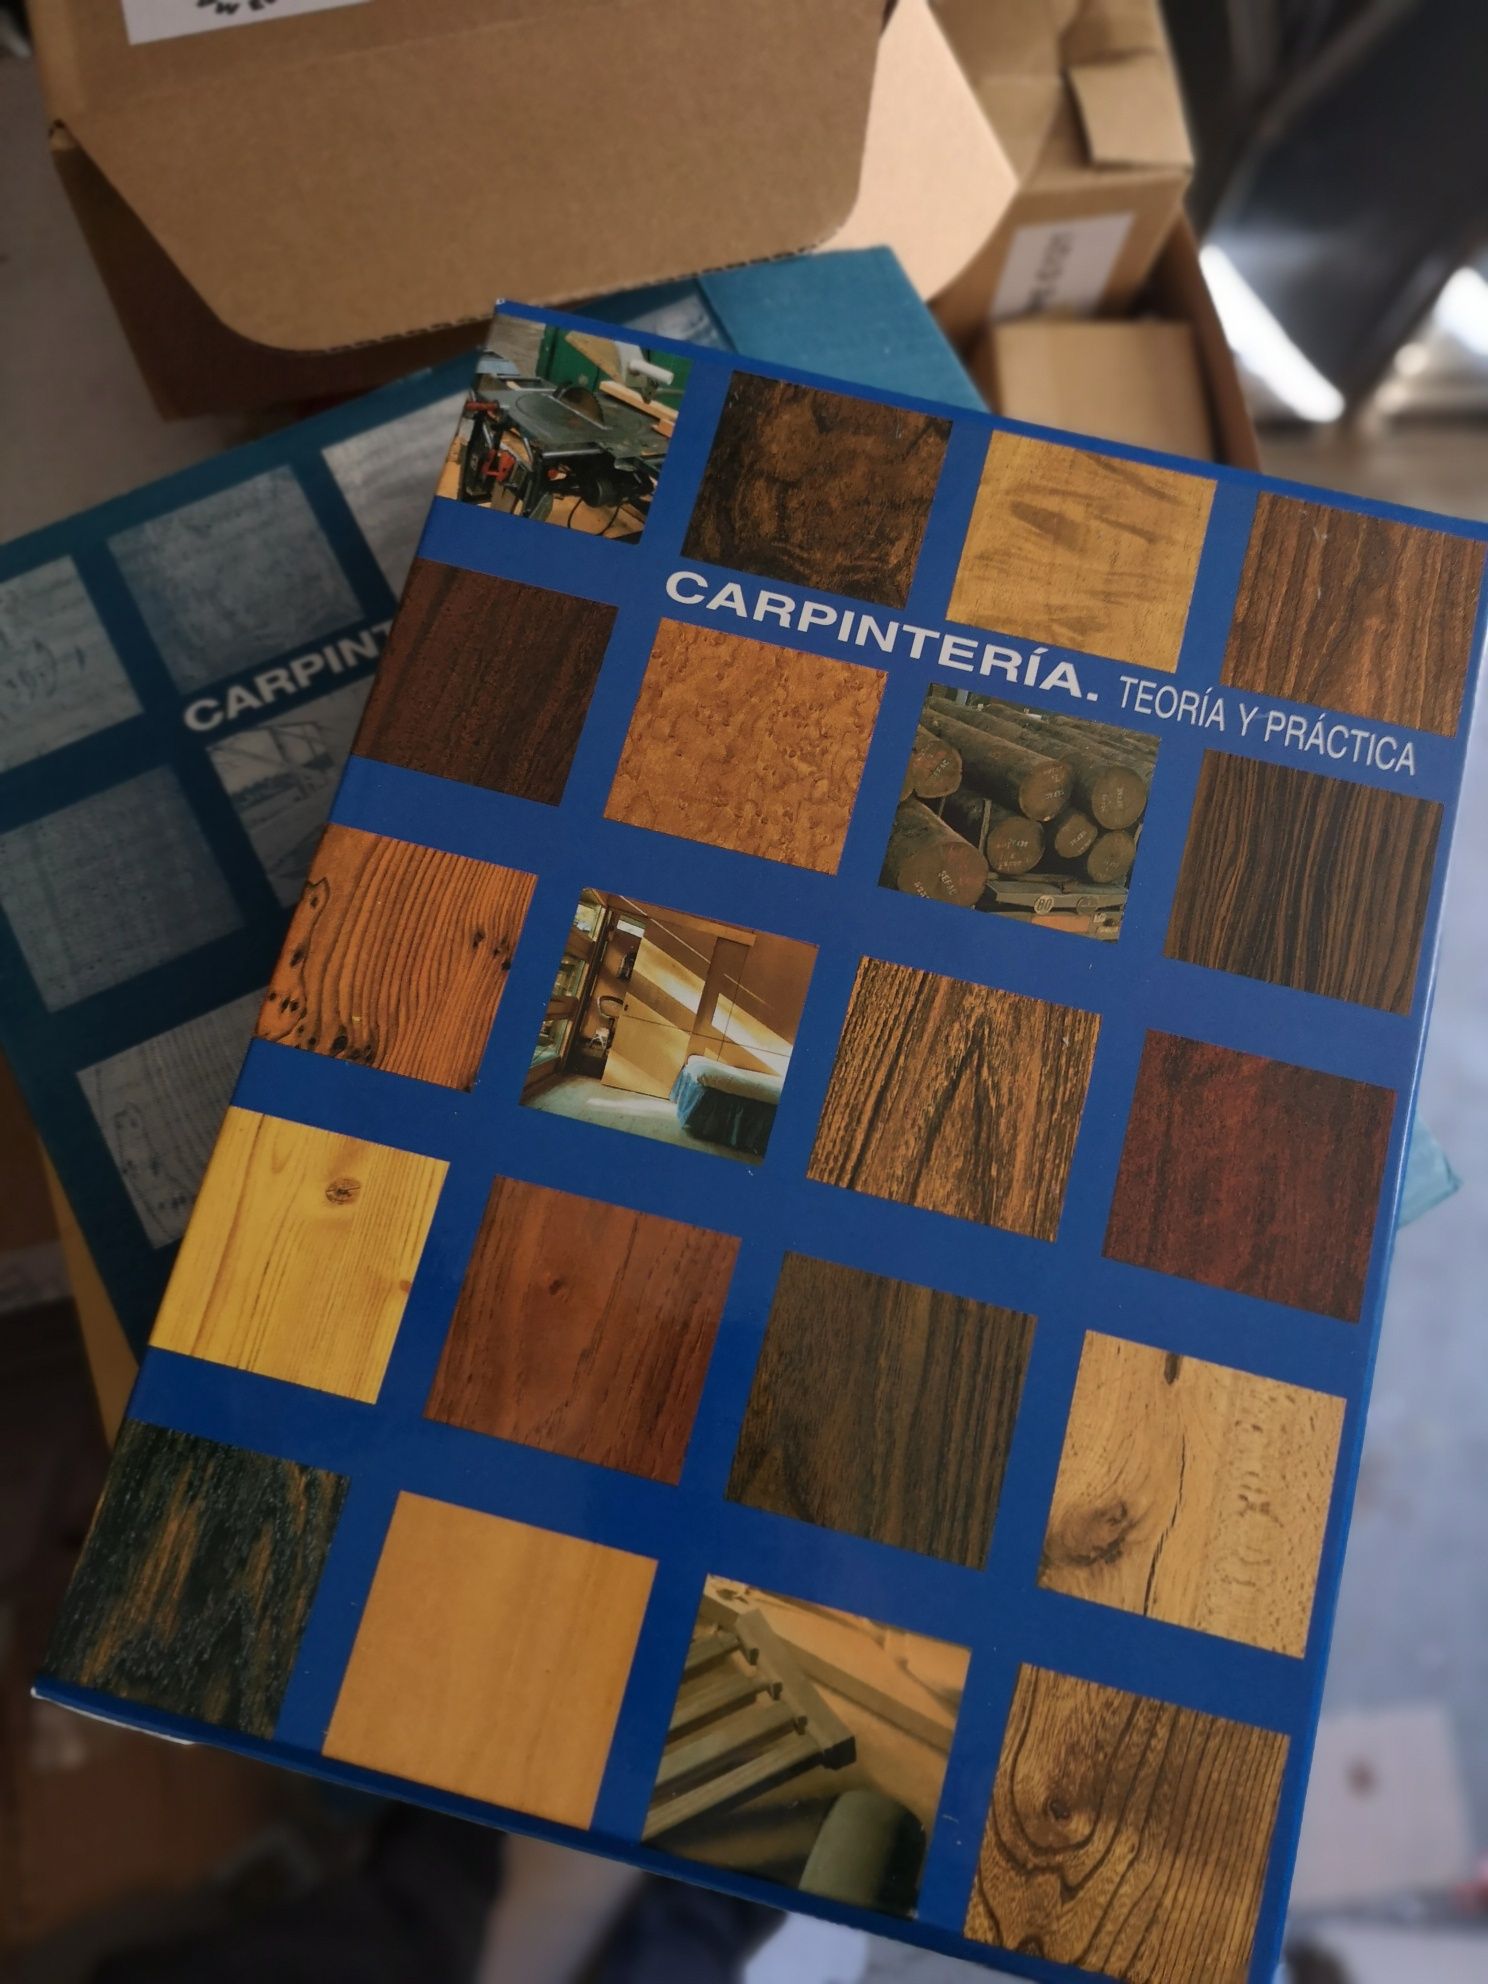 Carpintaria, teoria y practica - 4 volumes  - NOVOS